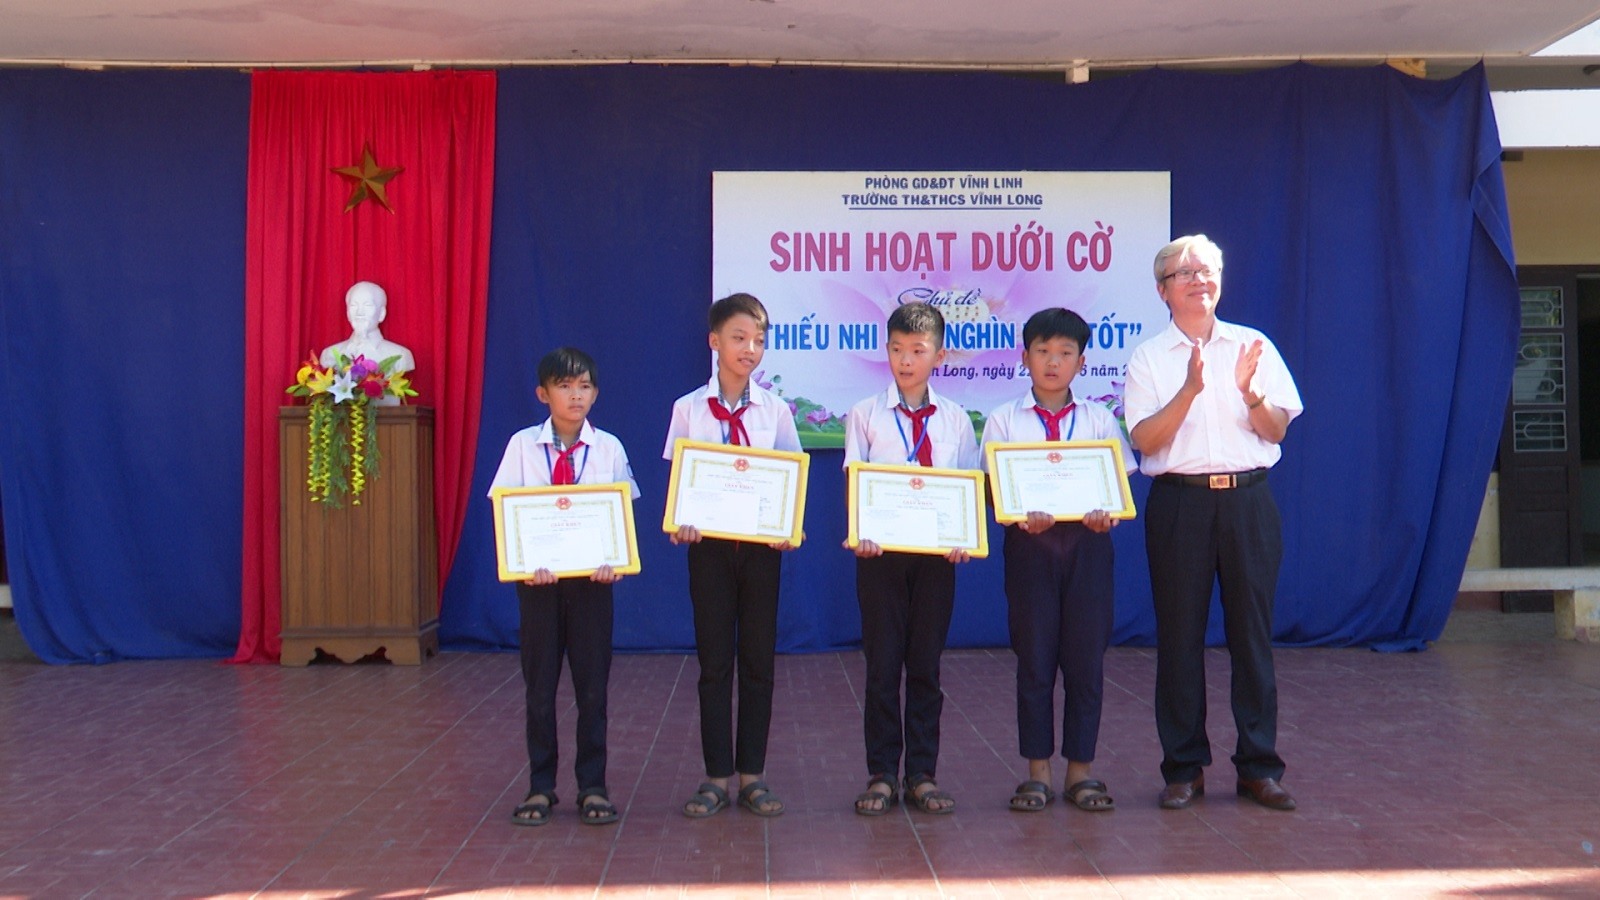 Thầy giáo Nguyễn Văn Thảo Nguyên, Phó trưởng phòng Tổ chức cán bộ - Chính trị tư tưởng trao giấy khen của GĐ Sở GD&ĐT cho 4 em học sinh có hành động đẹp cứu người gặp nạn.